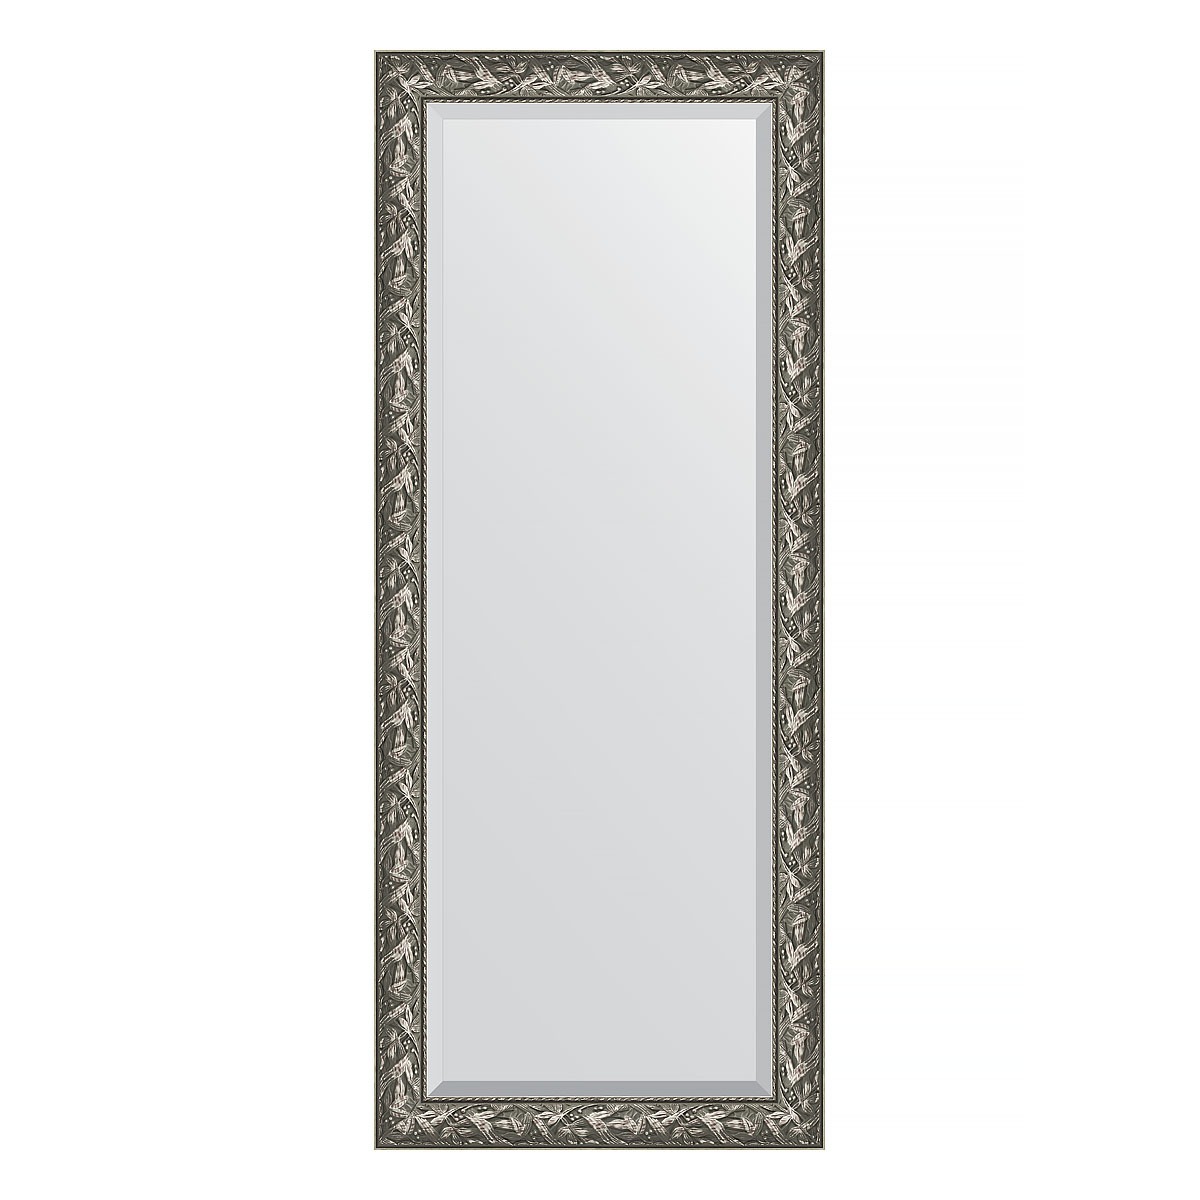 Зеркало напольное с фацетом в багетной раме Evoform византия серебро 99 мм 84x203 см зеркало напольное с фацетом в багетной раме византия золото 99 мм 84x203 см